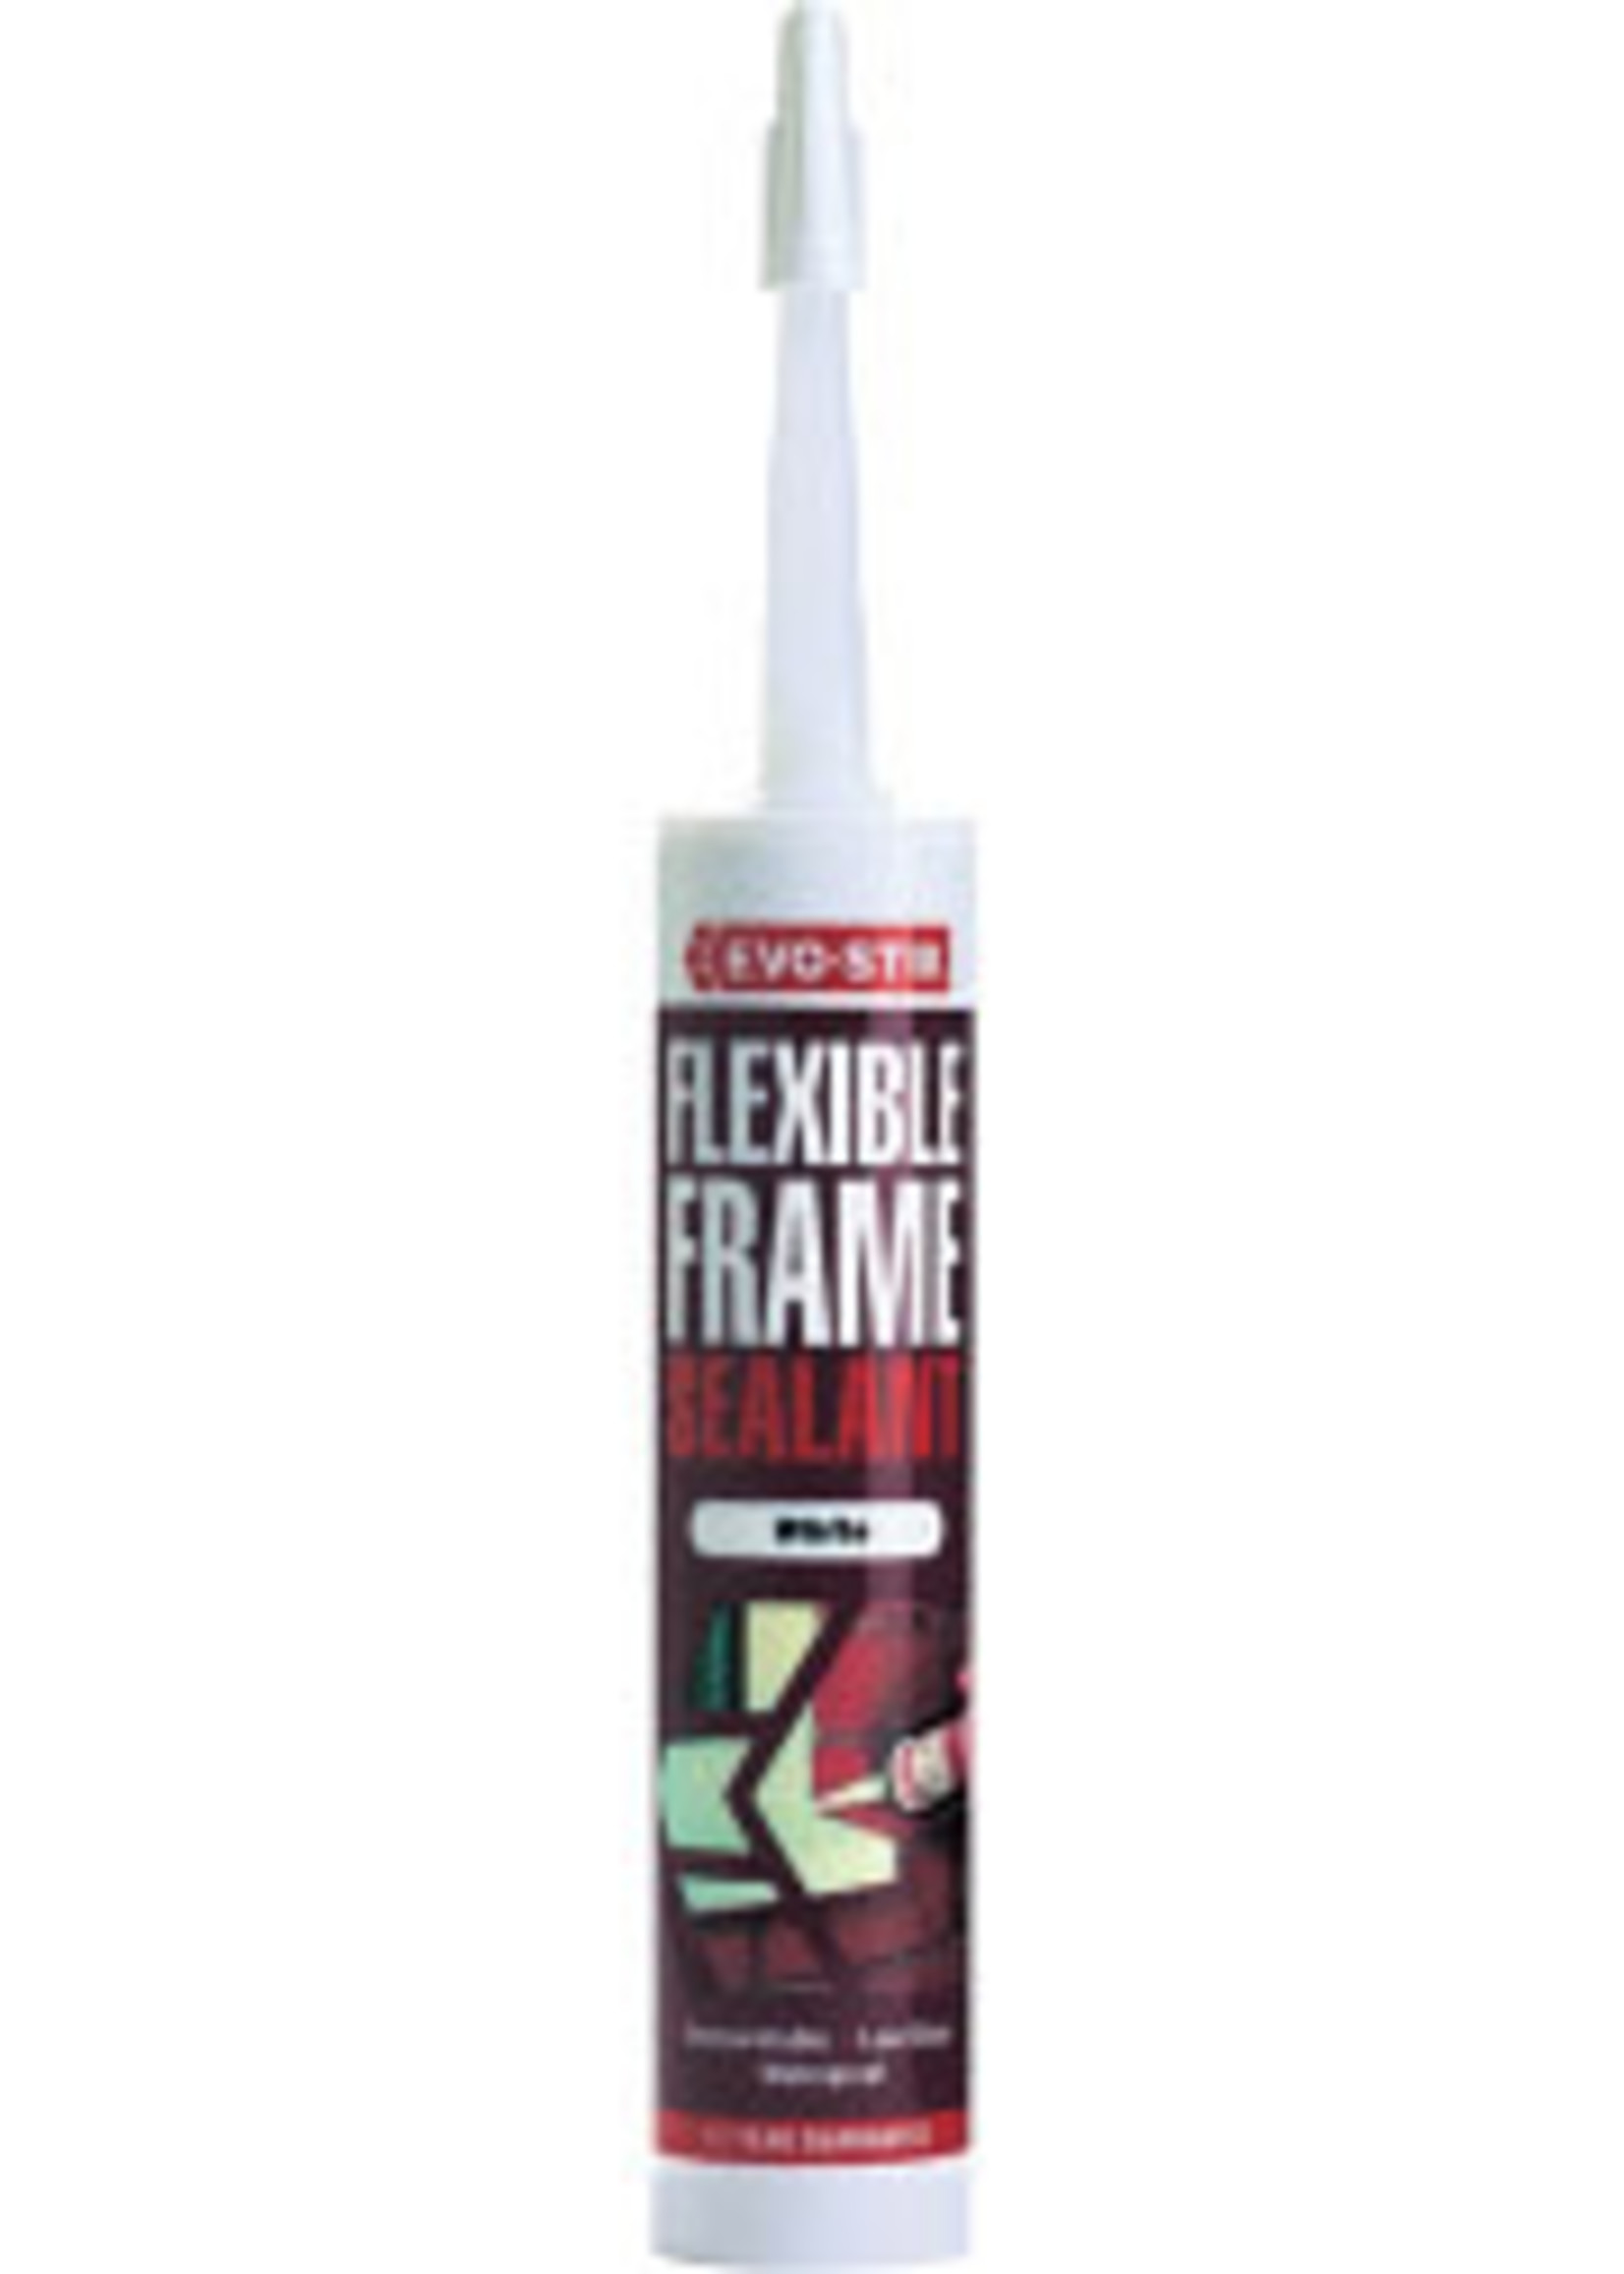 Bostik Evo-Stik Flexible Frame Sealant White C20